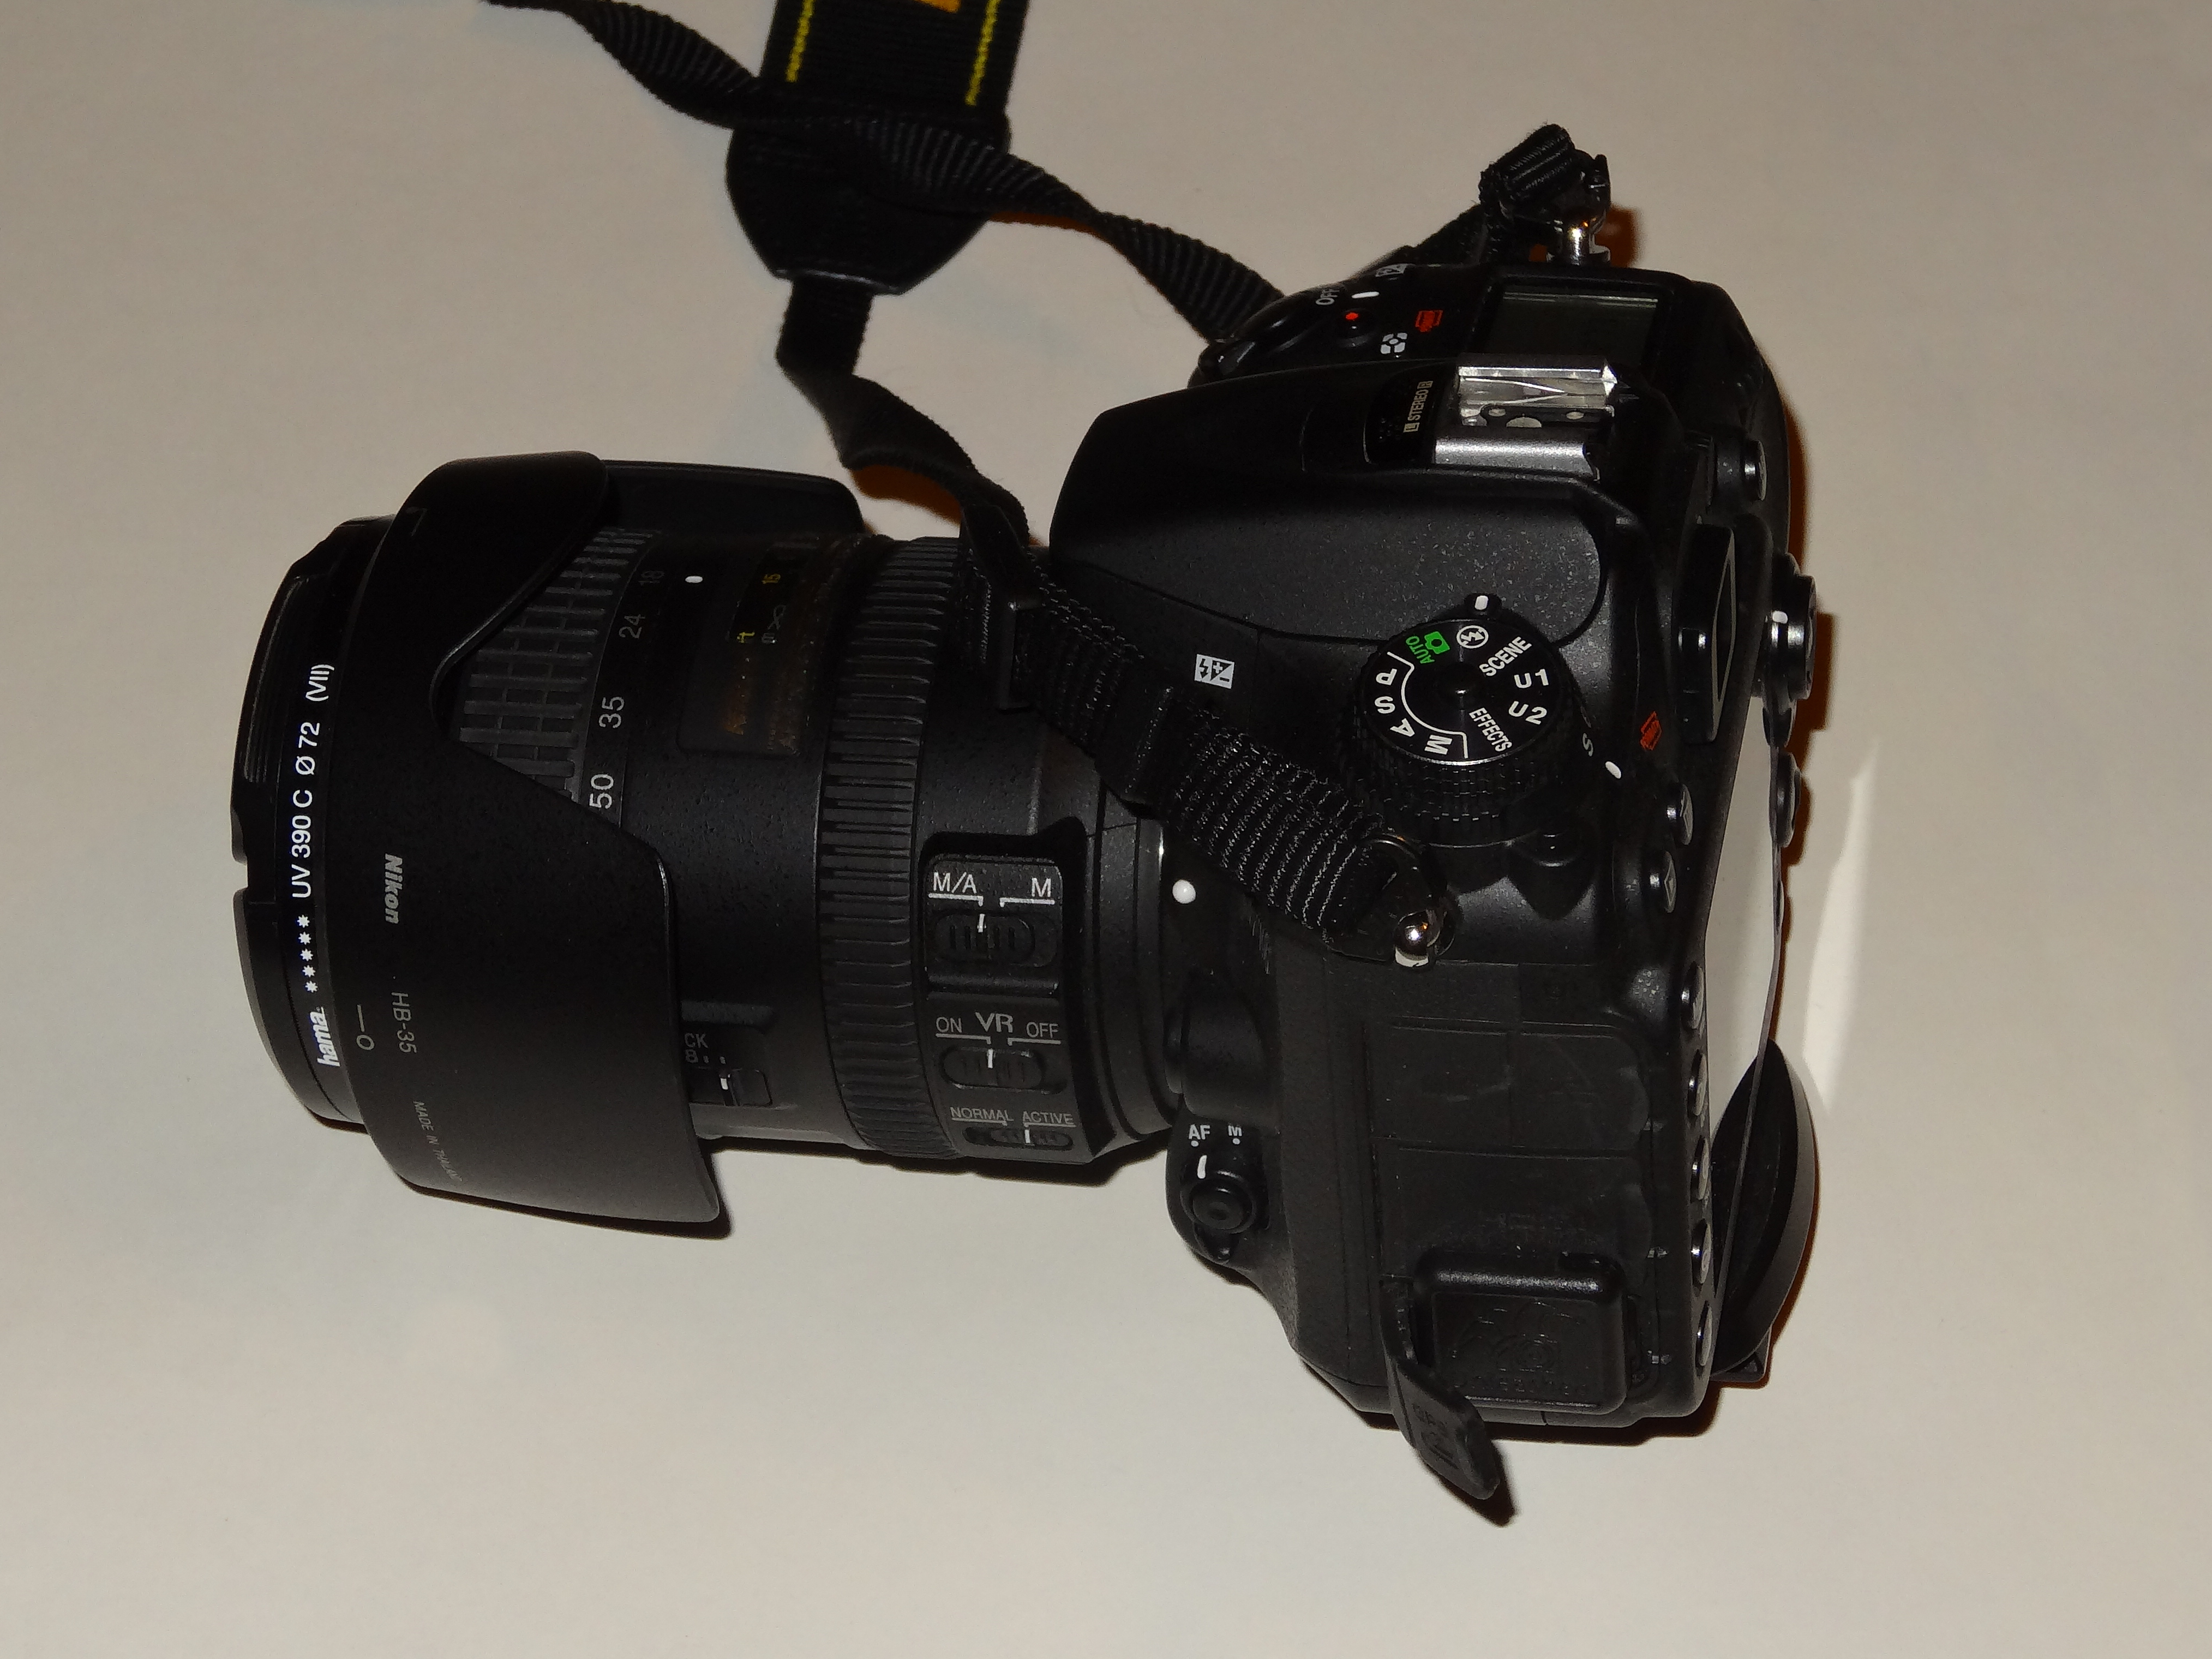 Nikon 7100 mit Empfänger für GPS-Daten DSC03425